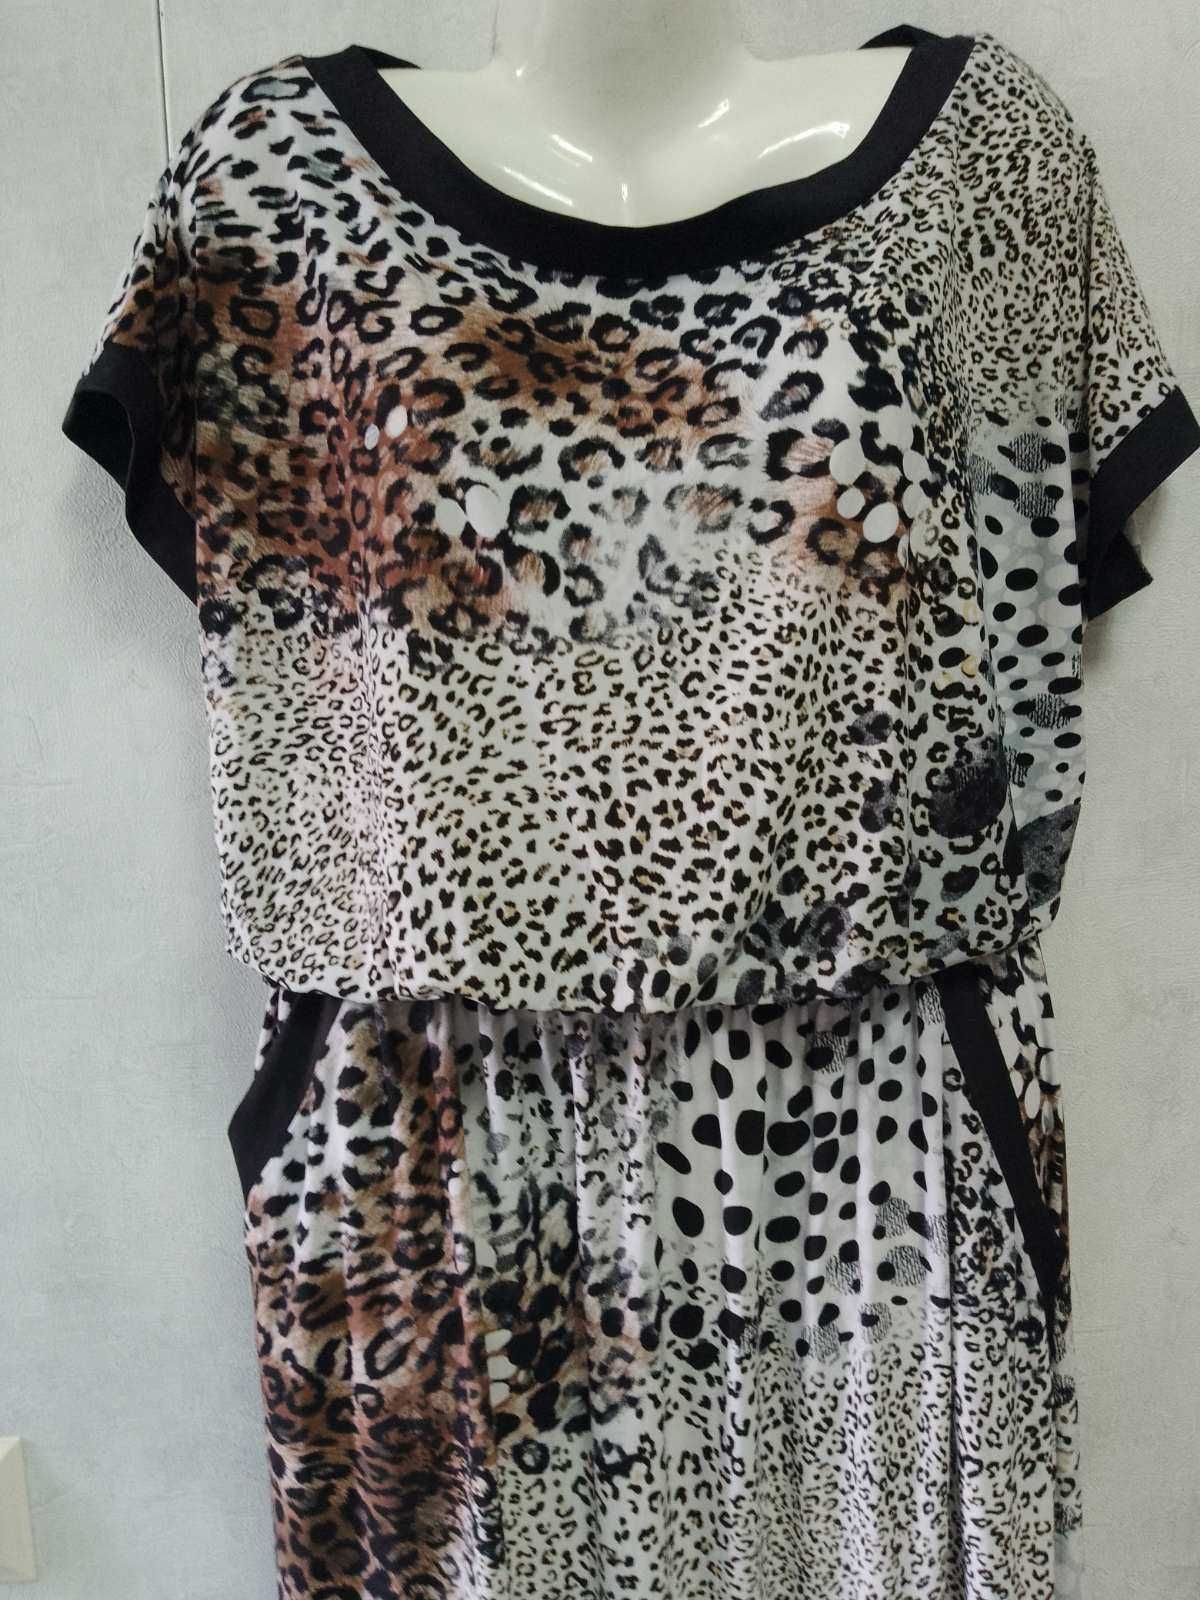 Леопардовое платье модель Макси .Трикотаж-масло . Размер 52-54